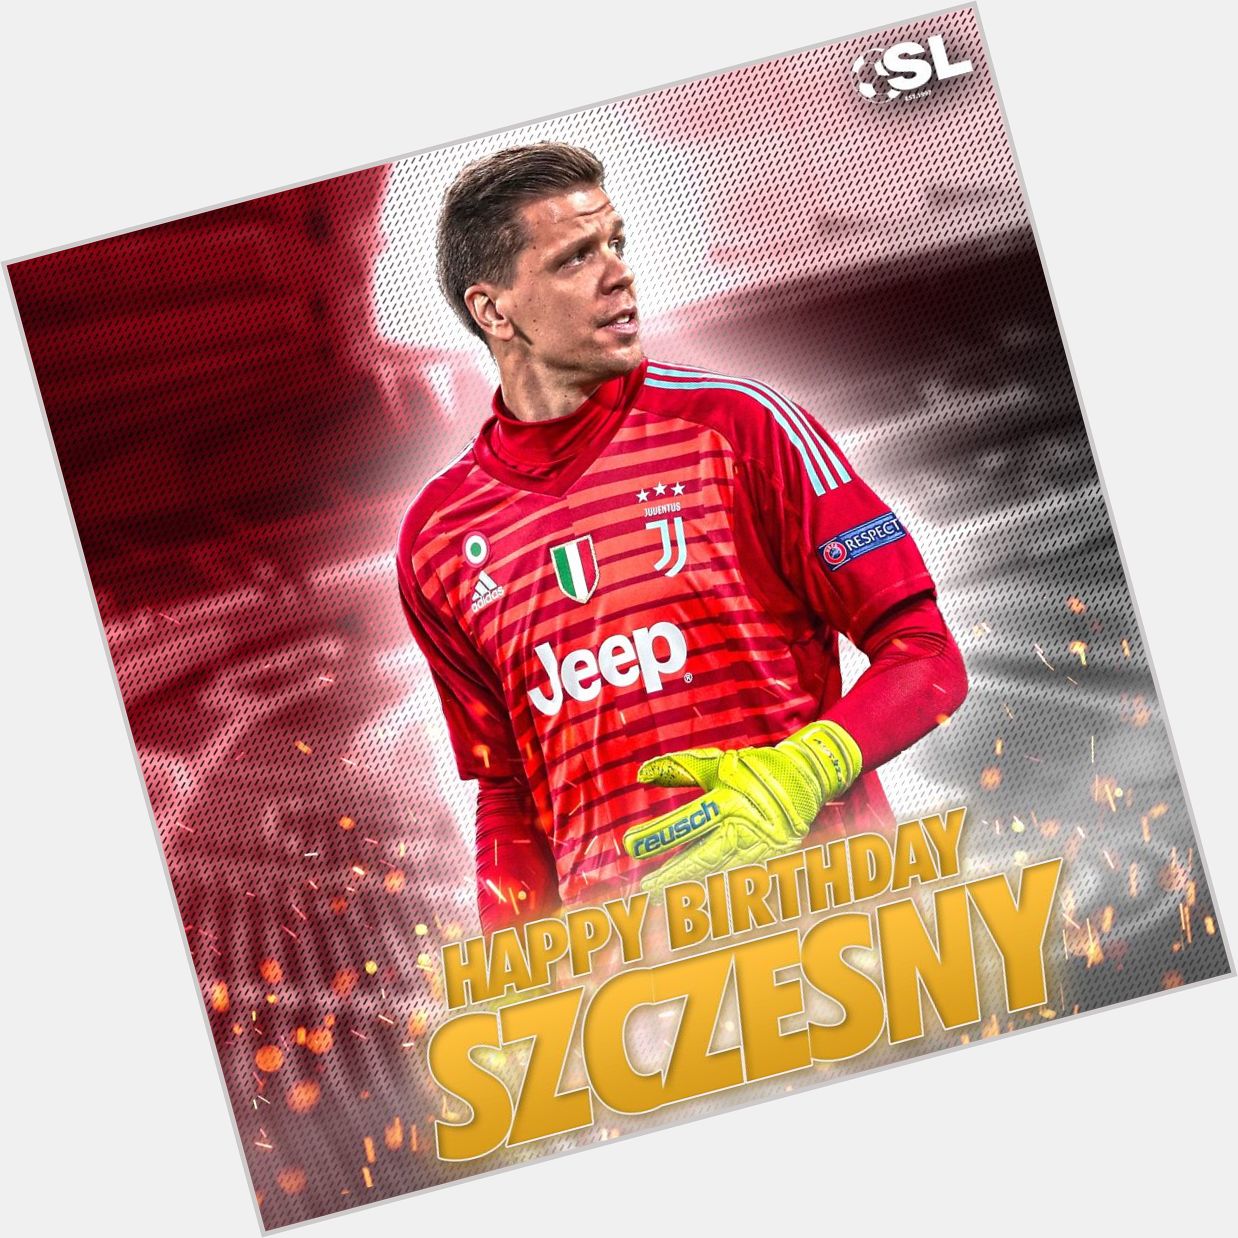 Happy Birthday to Juventus goalkeeper, Wojciech Szcz sny! 